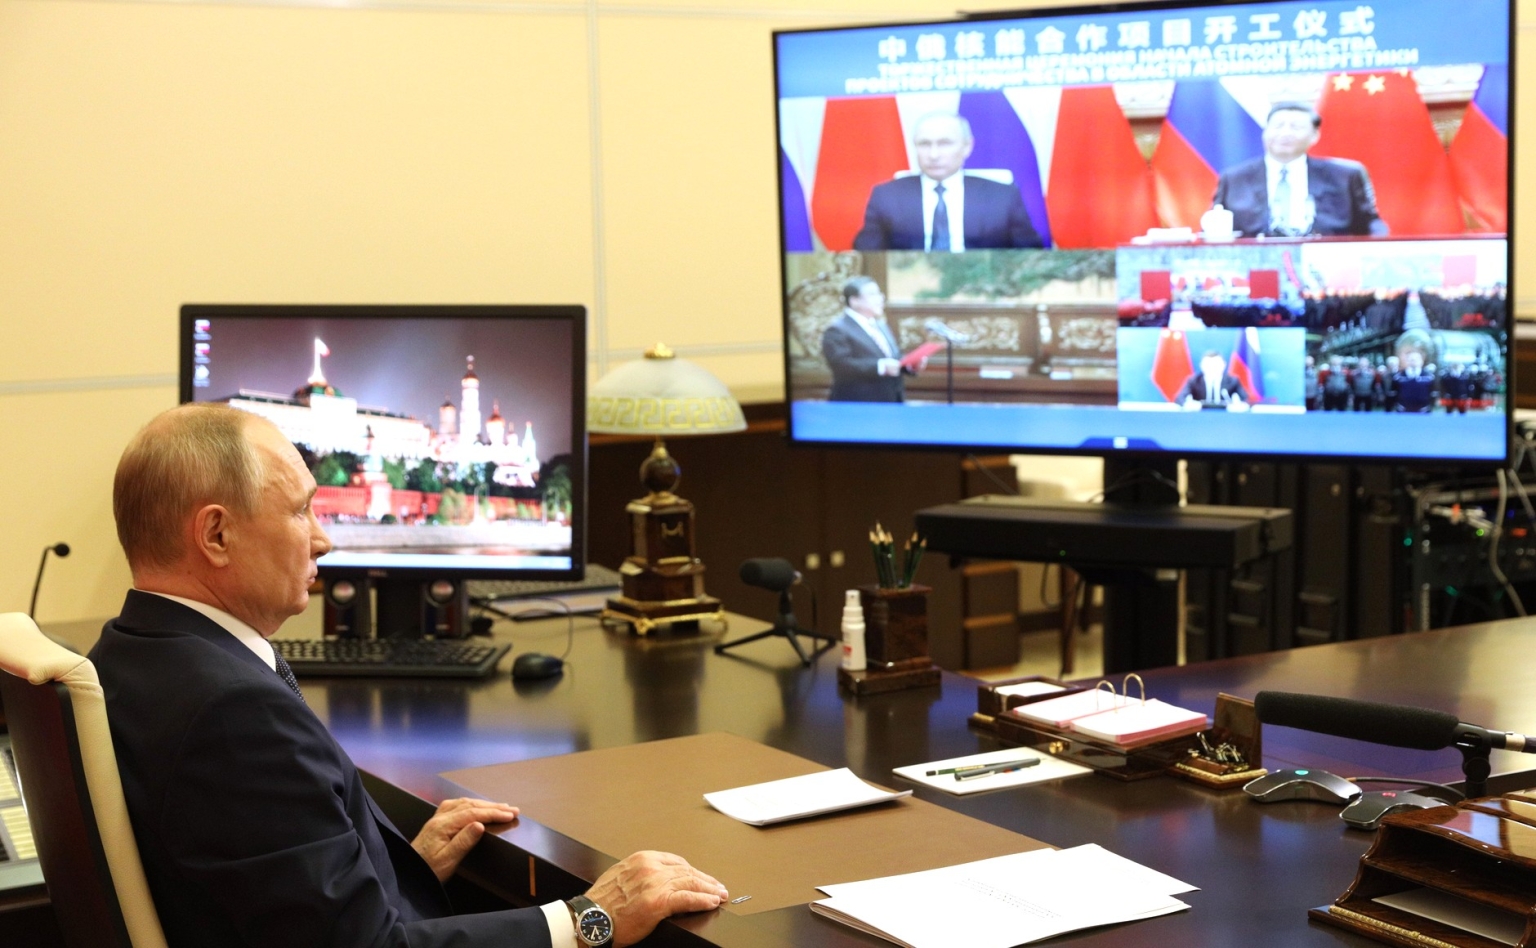 Präsident Putin und Präsident Xi verfolgen die Zeremonie per Videokonferenz.